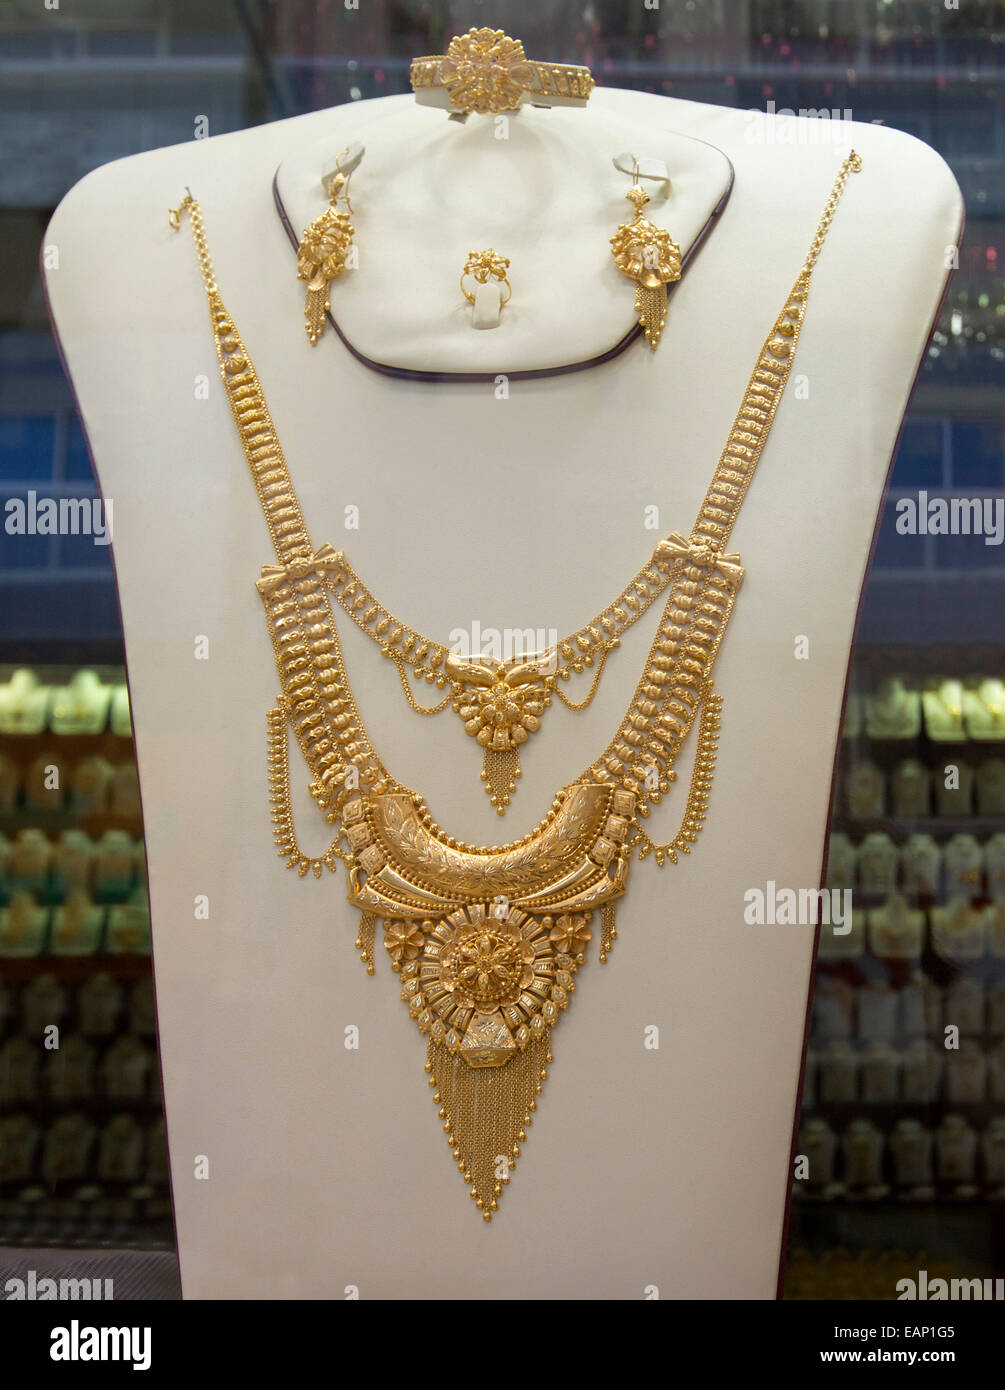 Aufwendige Goldkette mit komplizierten Design auf Anzeige in gold Souk / Markt, eine beliebte Touristenattraktion in Dubai UAE Stockfoto